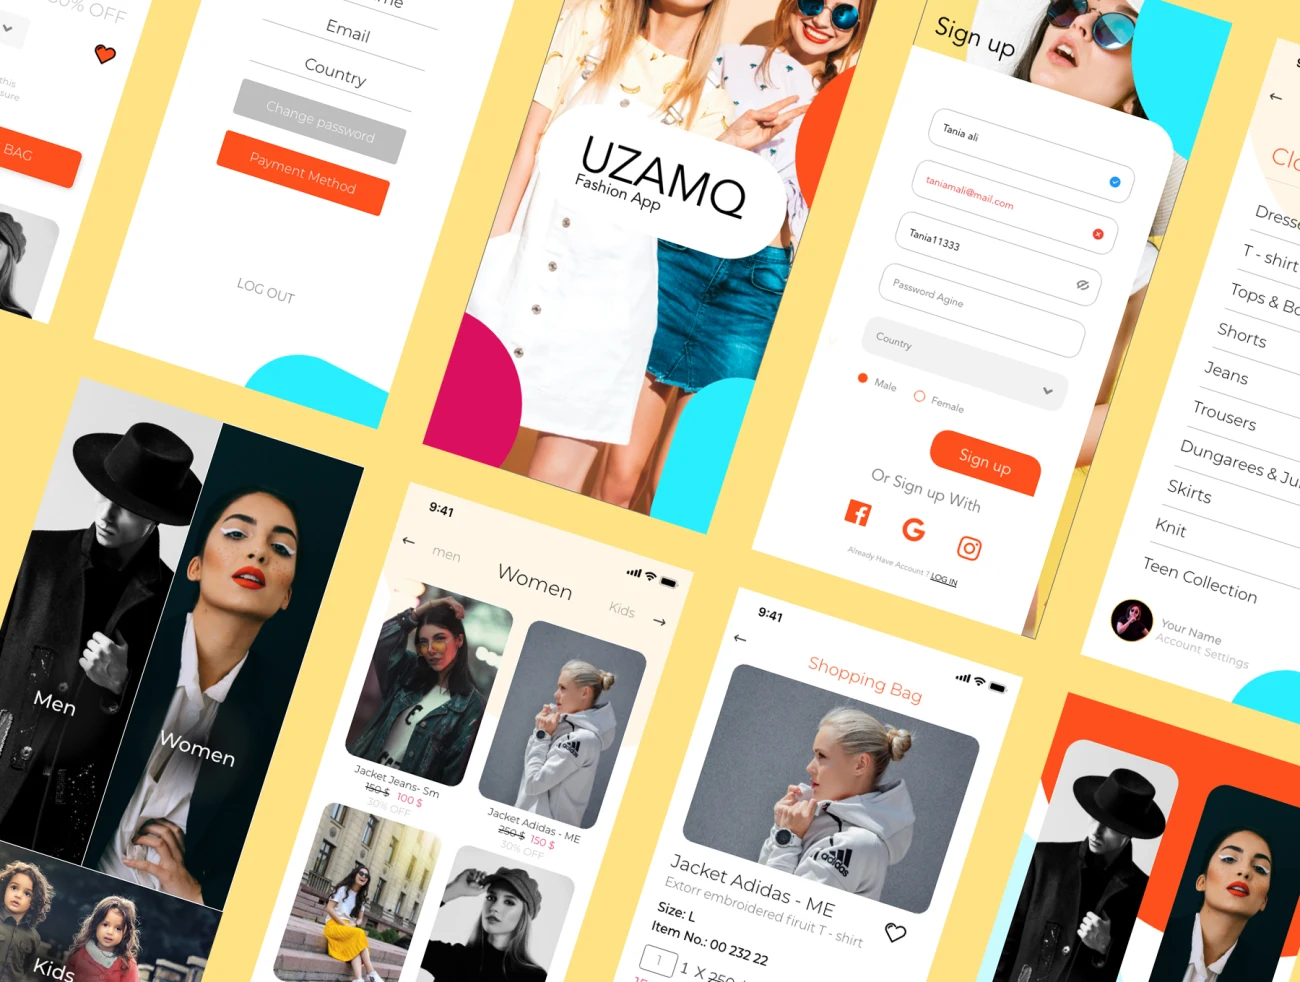 潮流时尚电商服饰网购应用设计套件 UZAMQ Ui Fashion App-UI/UX、ui套件、付款、应用、支付、注册、海报、登录页、社交购物、网购-到位啦UI